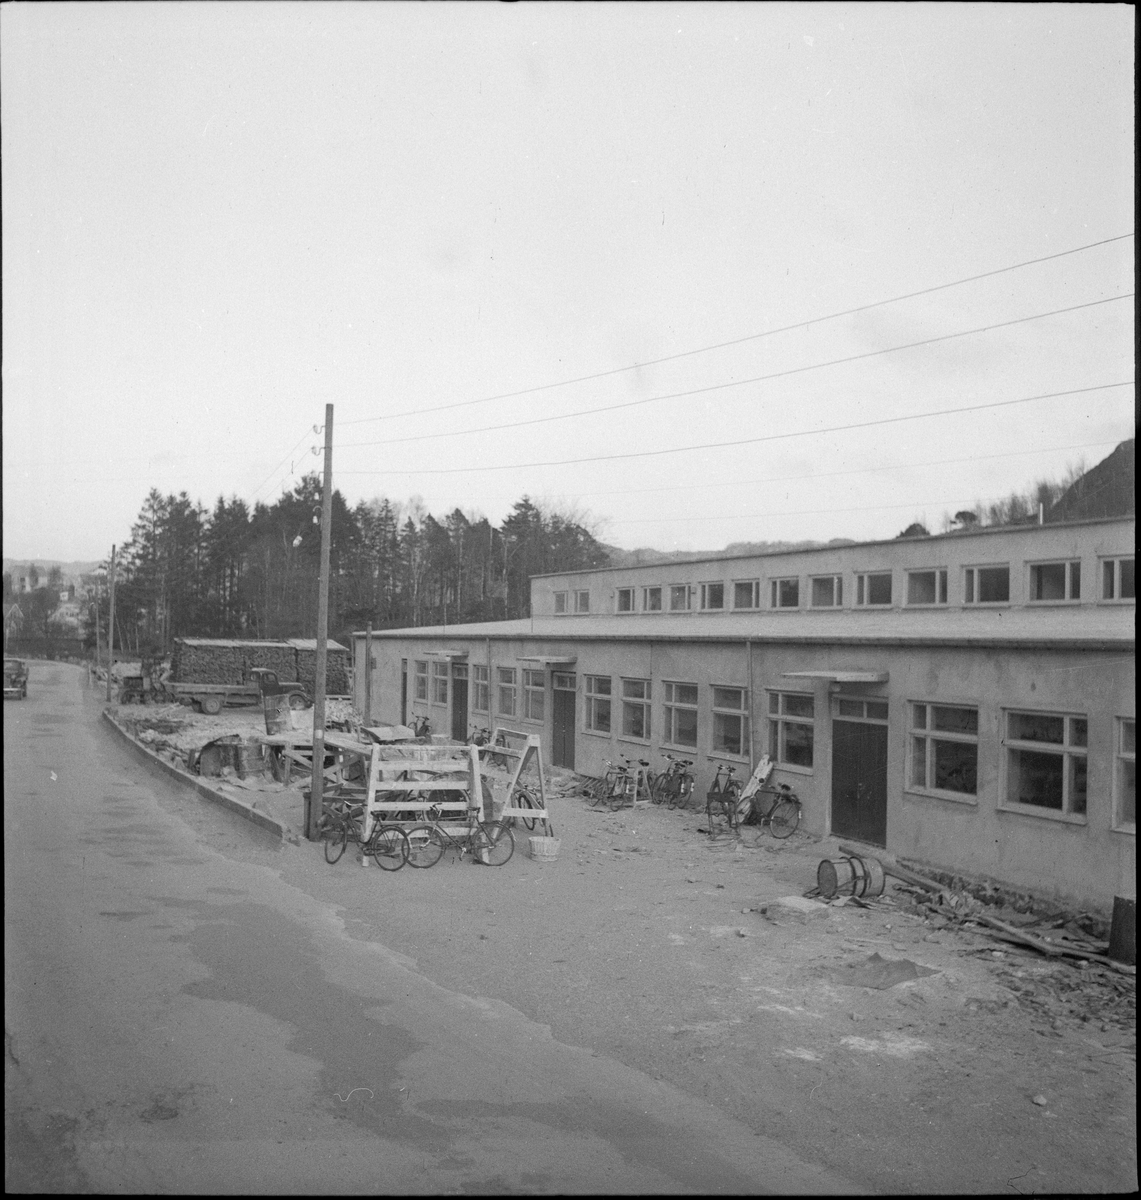 Fabrikken "L. Jacobsens Møbelsnekkeri" sett fra ulike vinkler. Fabrikken lå mellom Nyeveien og Lundeåna i Egersund.